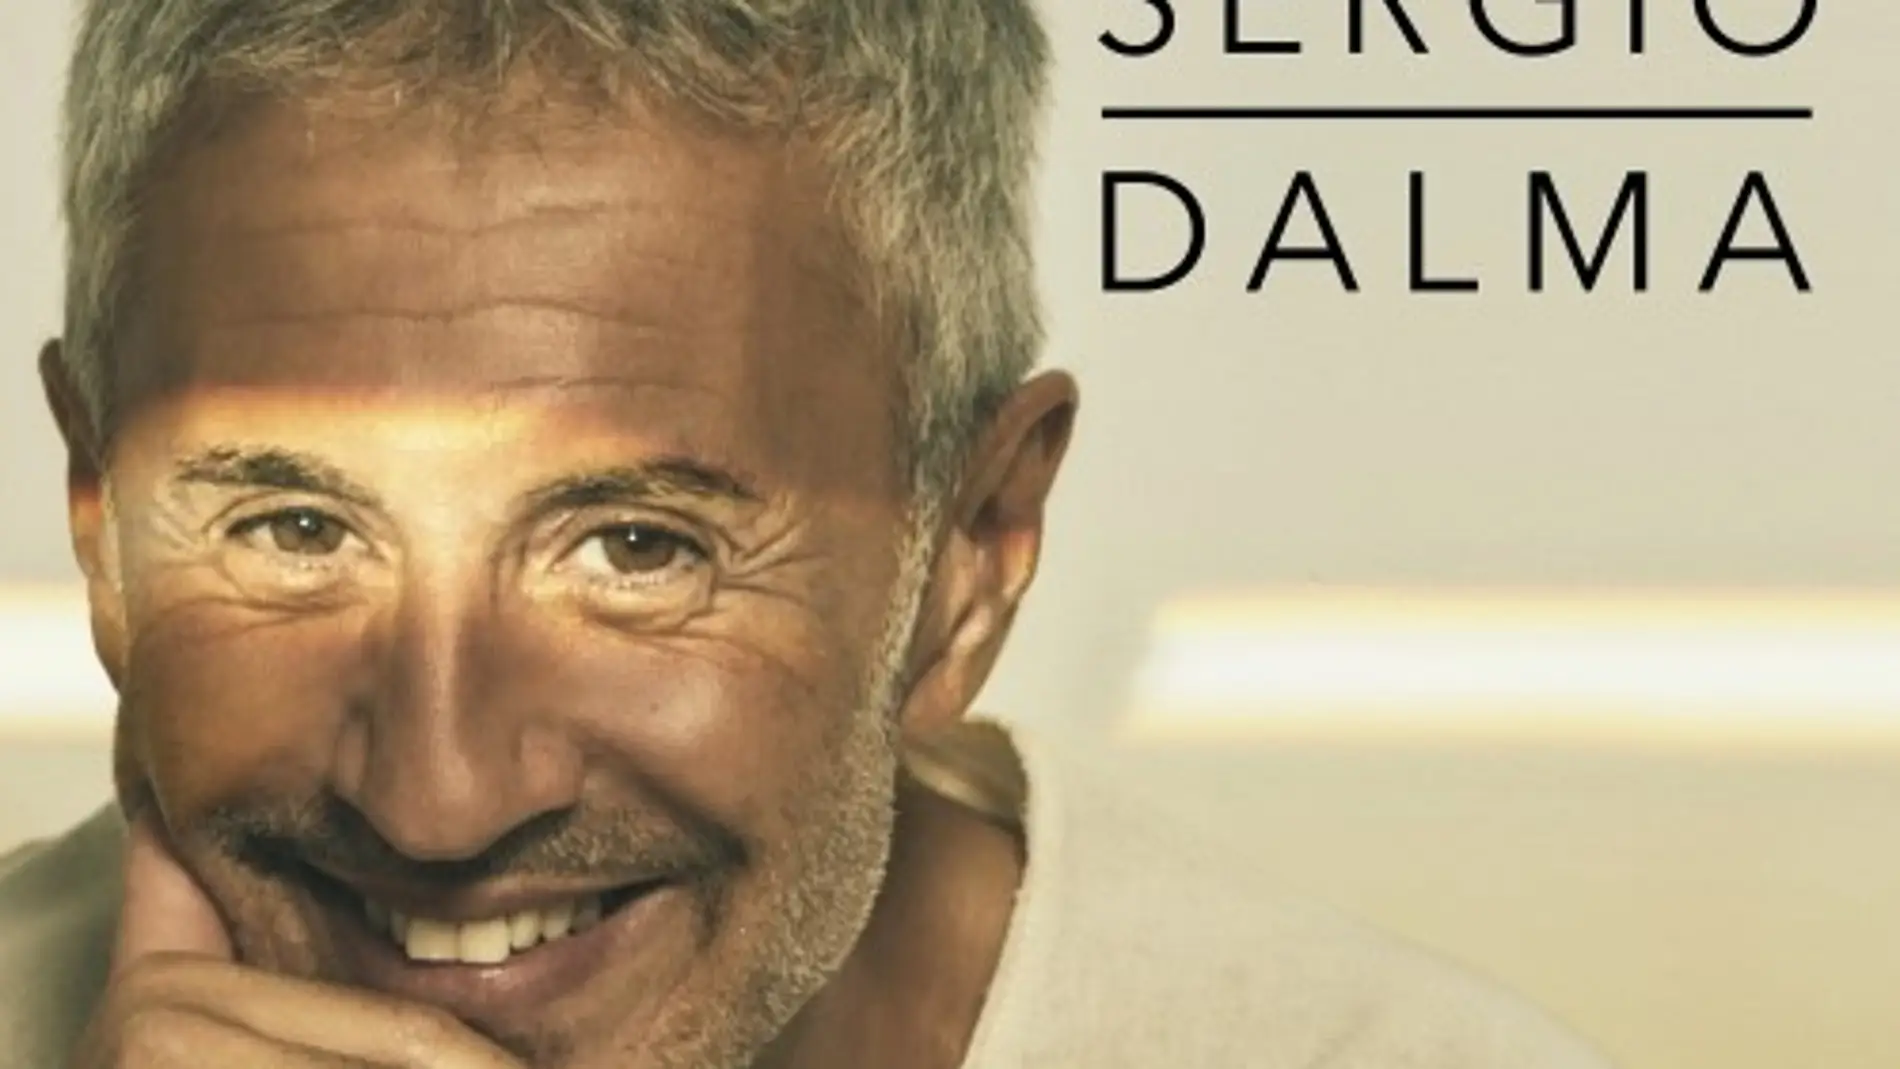 Sergio Dalma trae su “Alegría” a Albacete el sábado 19 de febrero